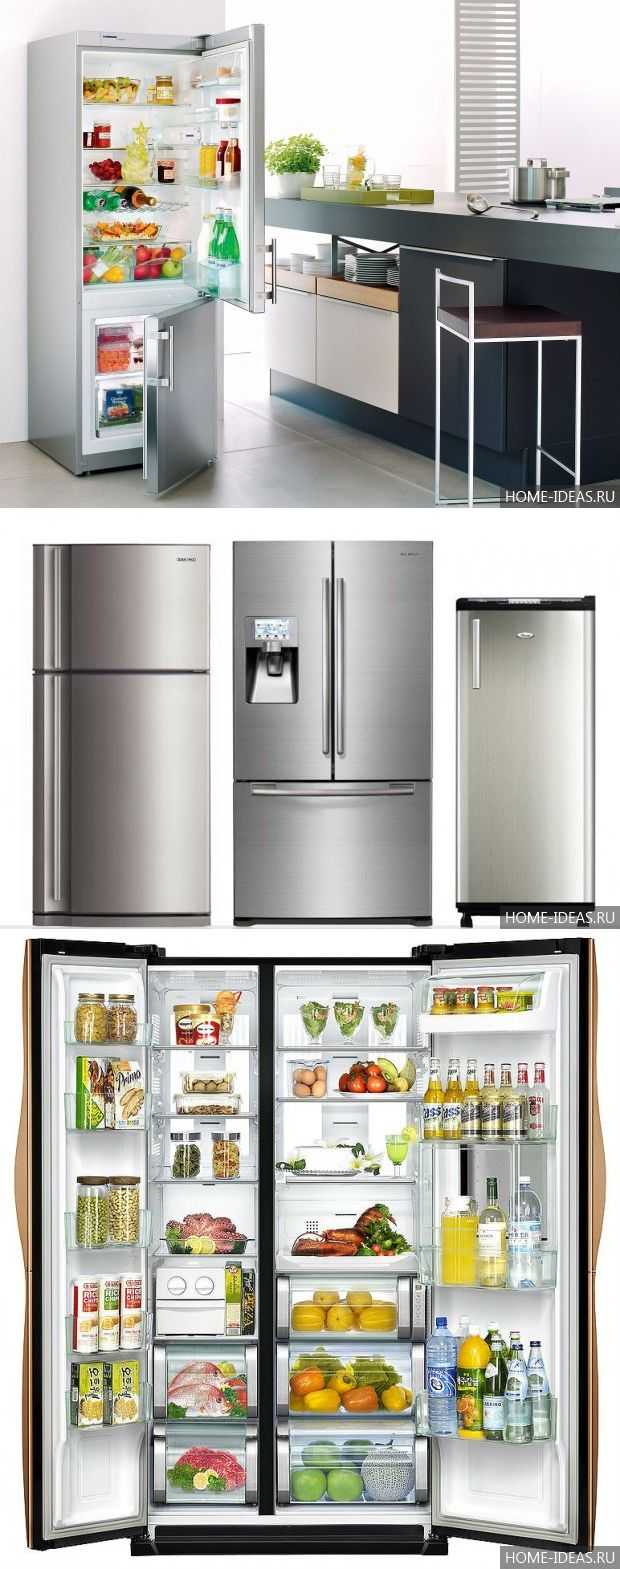 Холодильники какой марки лучше приобретать?